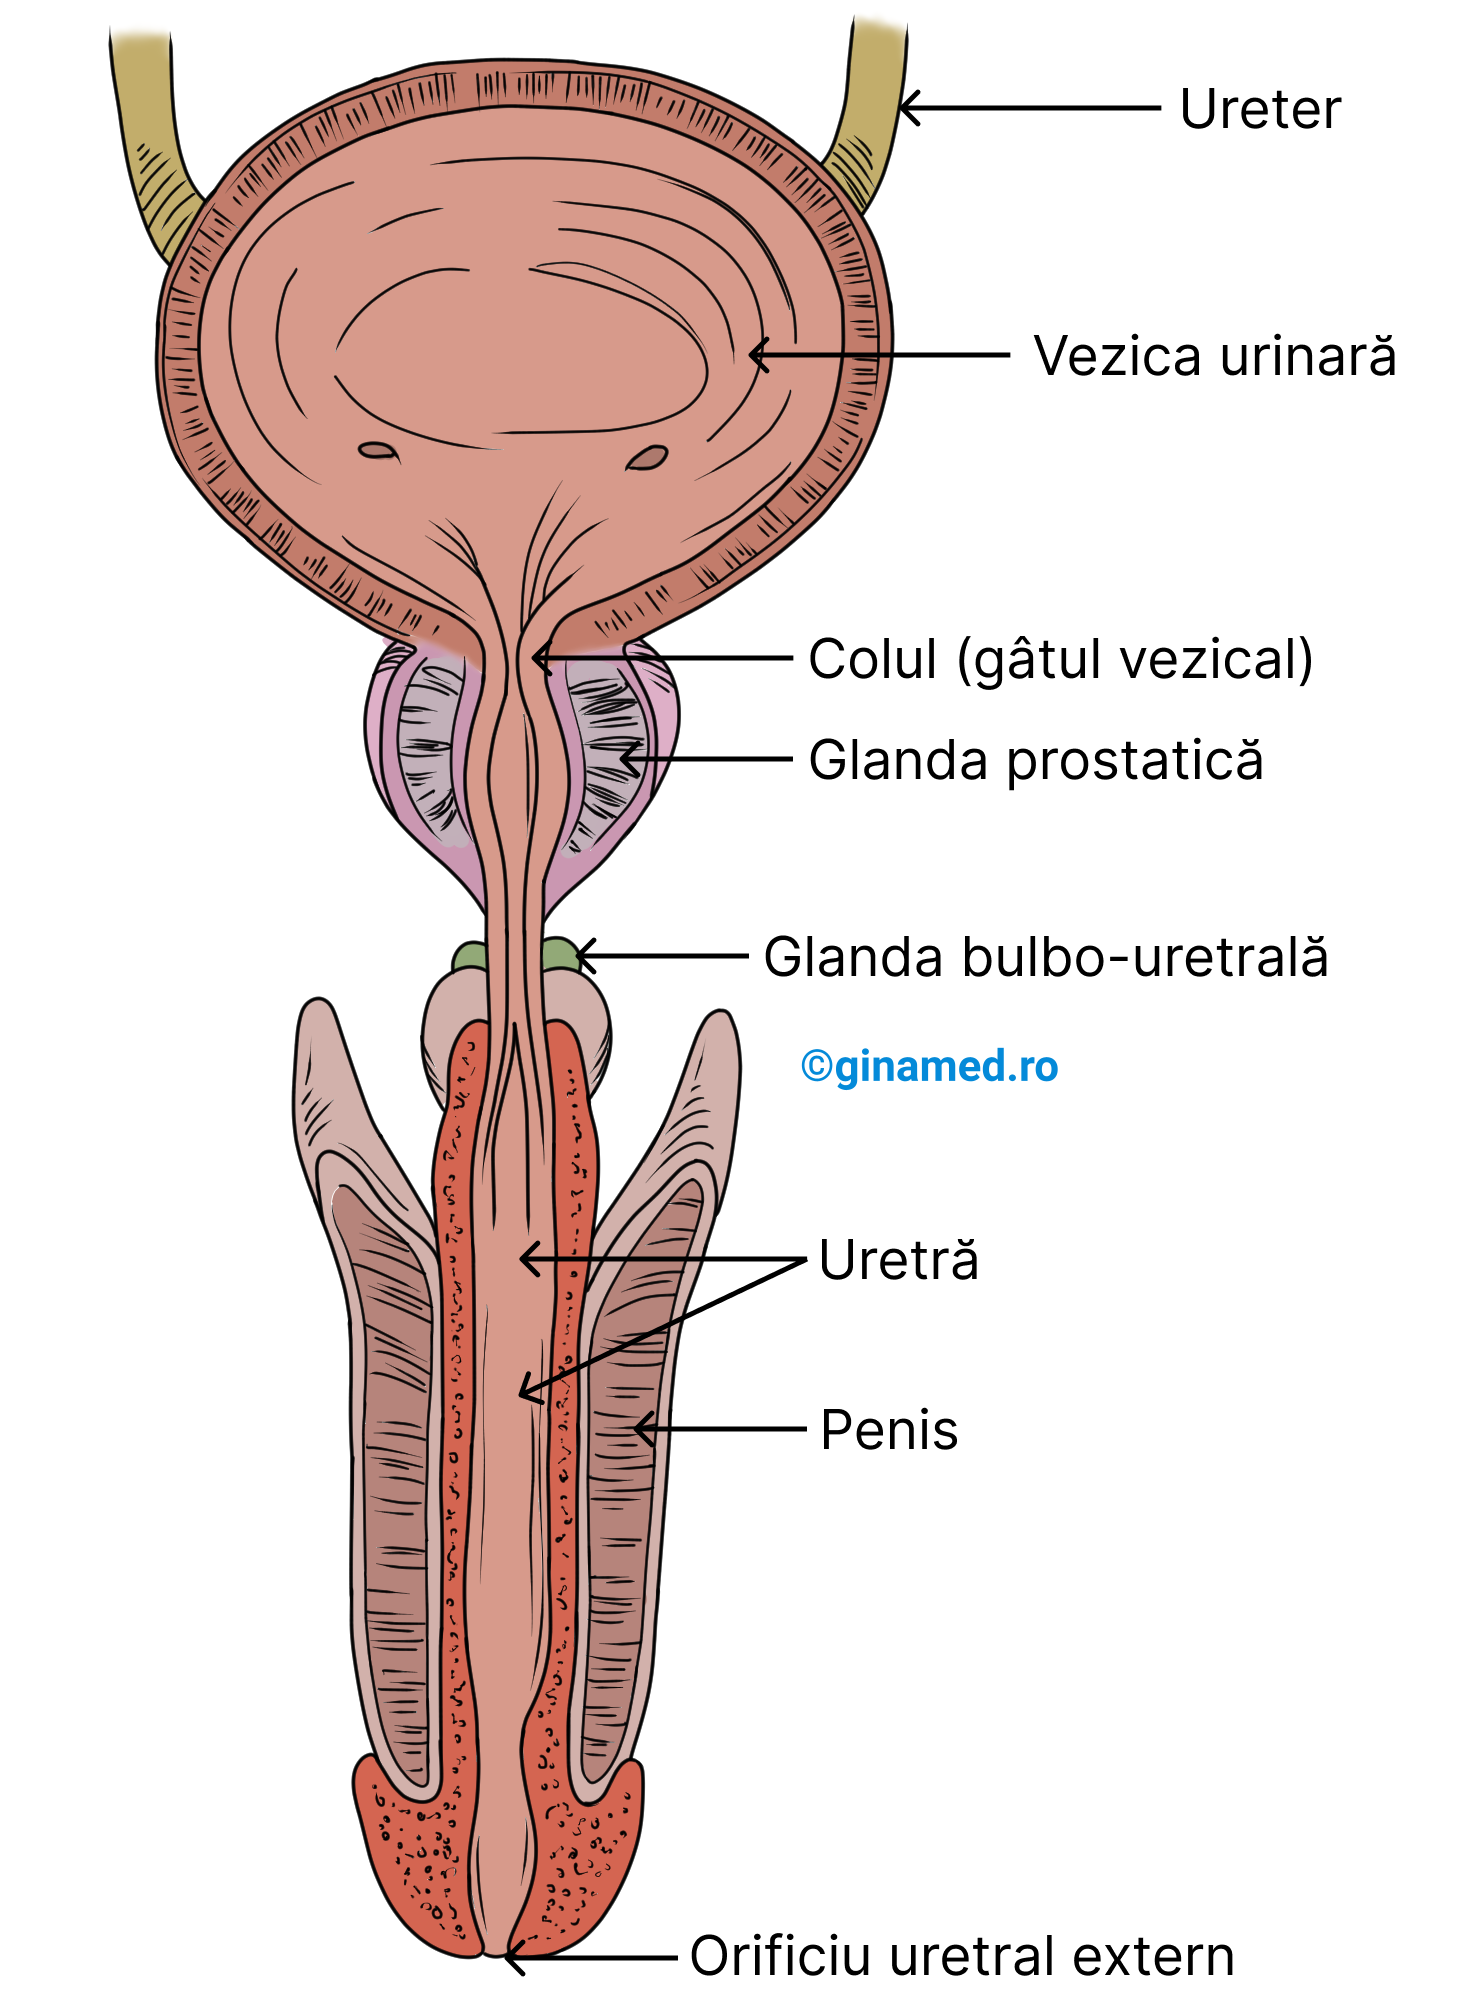 Structurile anexe ale aparatului urinar masculin (prostata și glandele bulbouretrale sunt parte din sistemul reproducător).